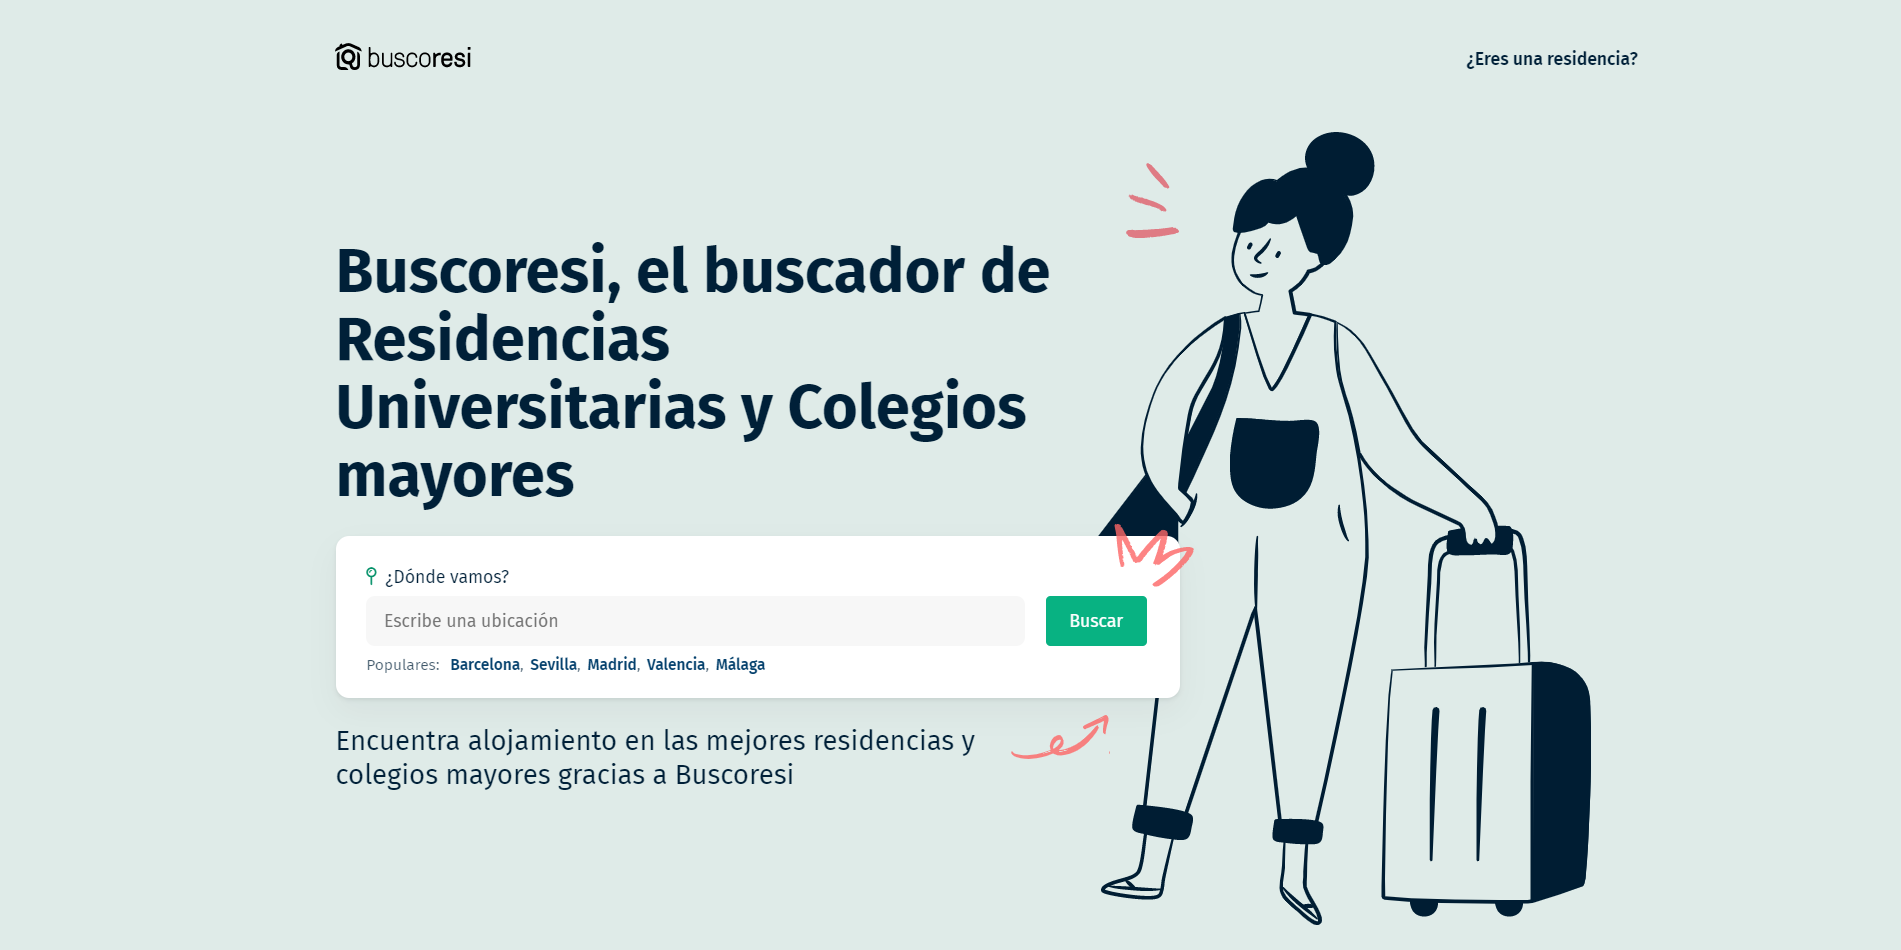 Buscoresi, la startup que ayuda a estudiantes a encontrar alojamiento